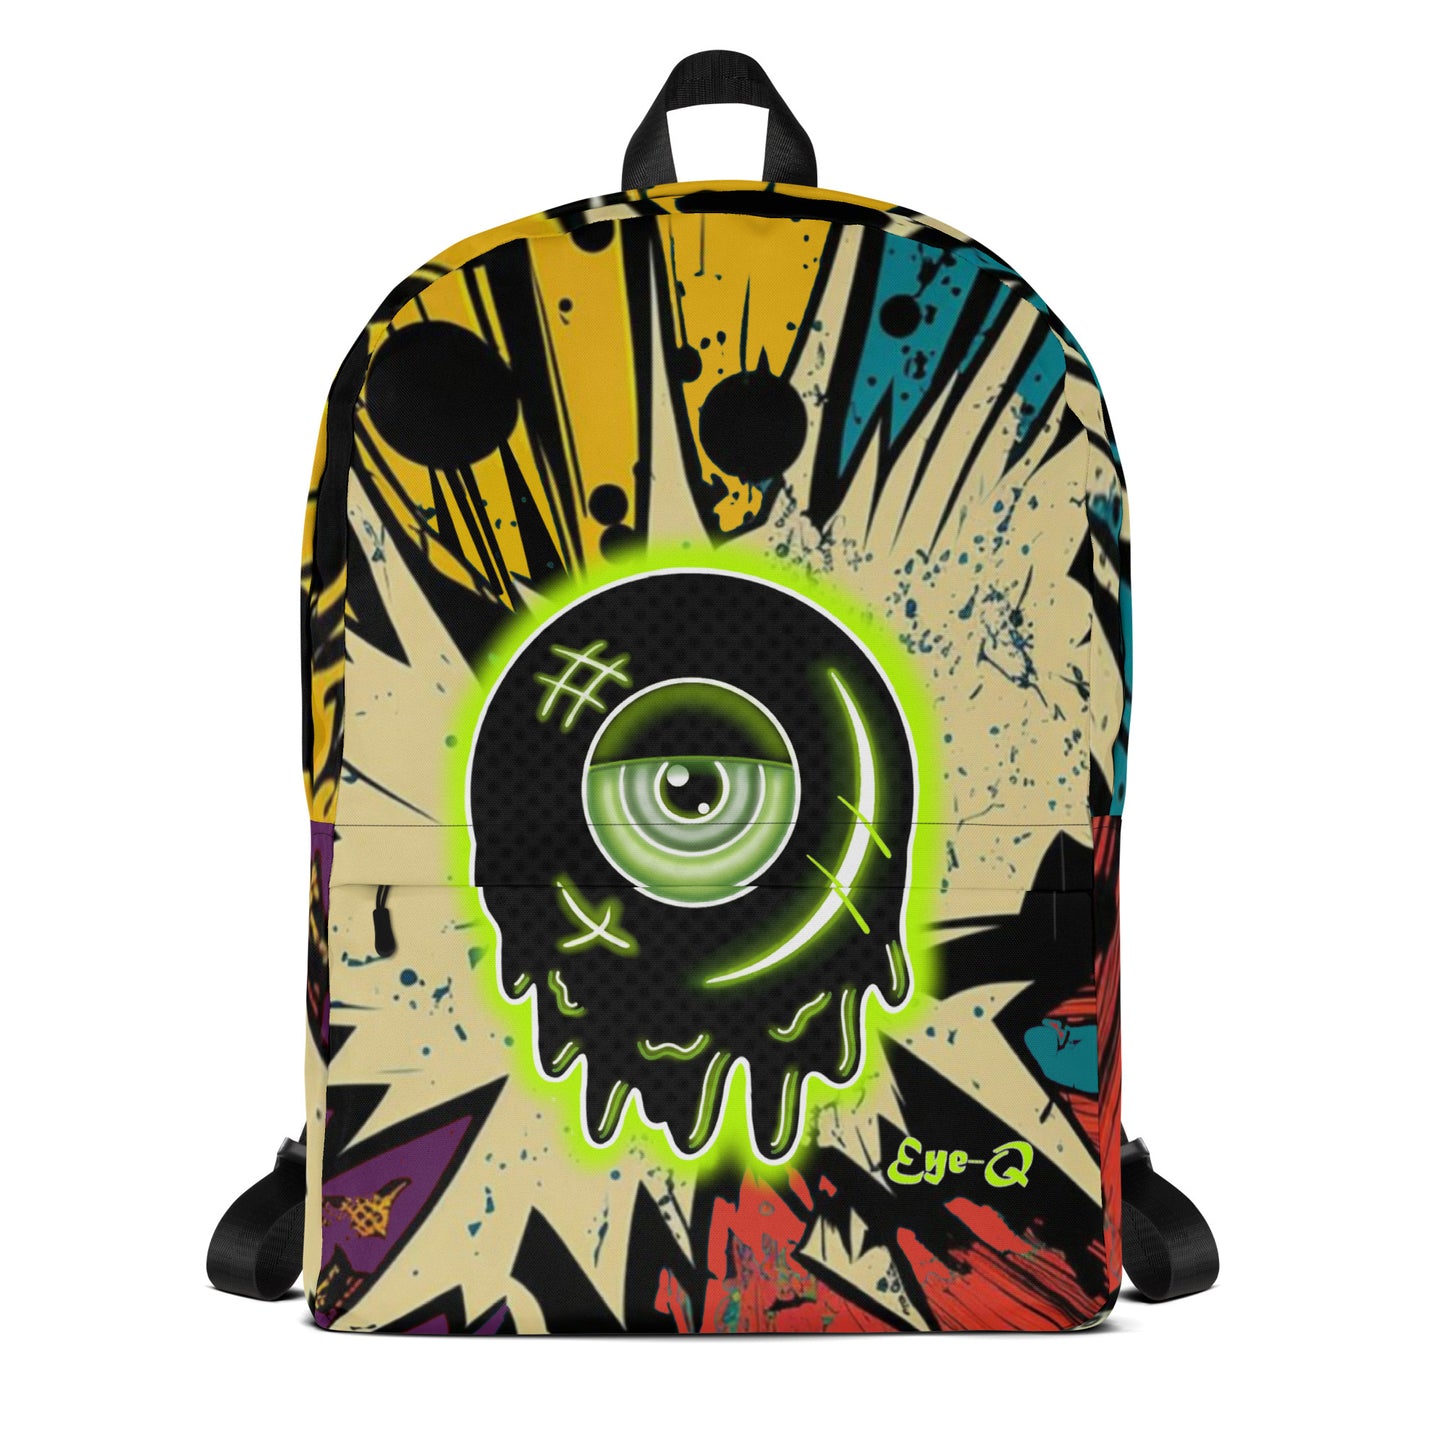 Eye-Q Backpack